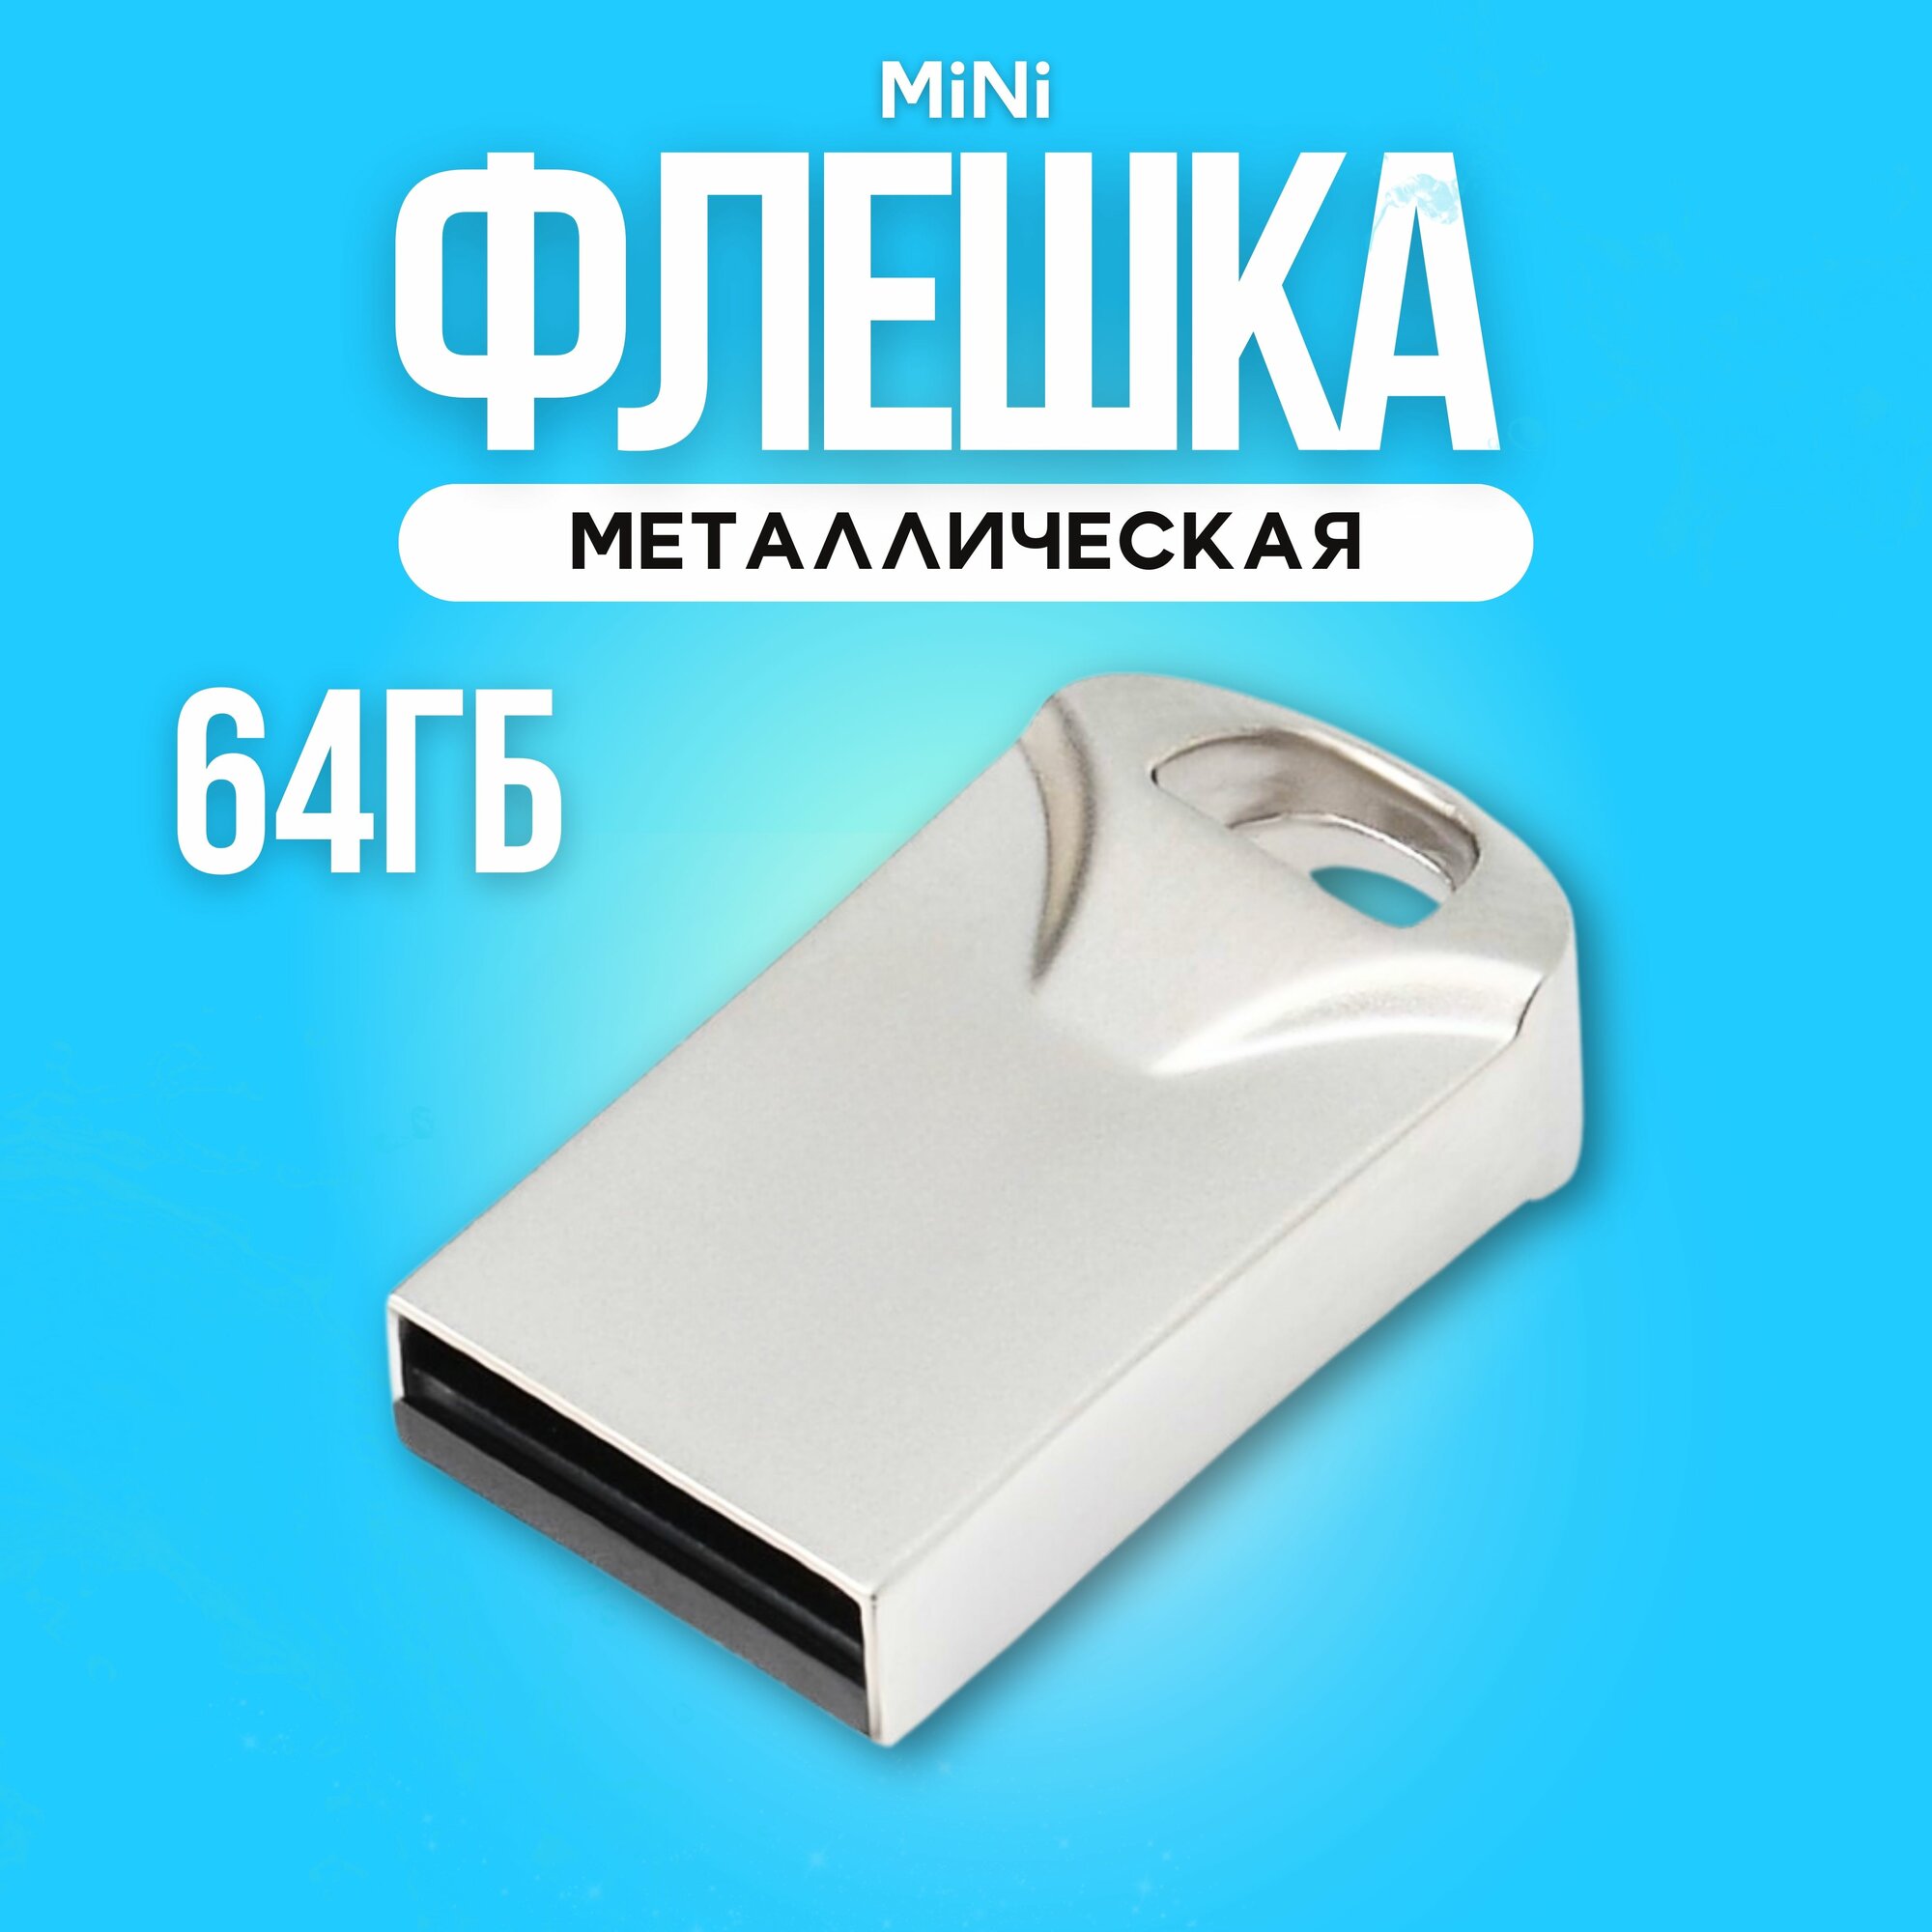 Флешка Bestoss USB 2.0 64 ГБ